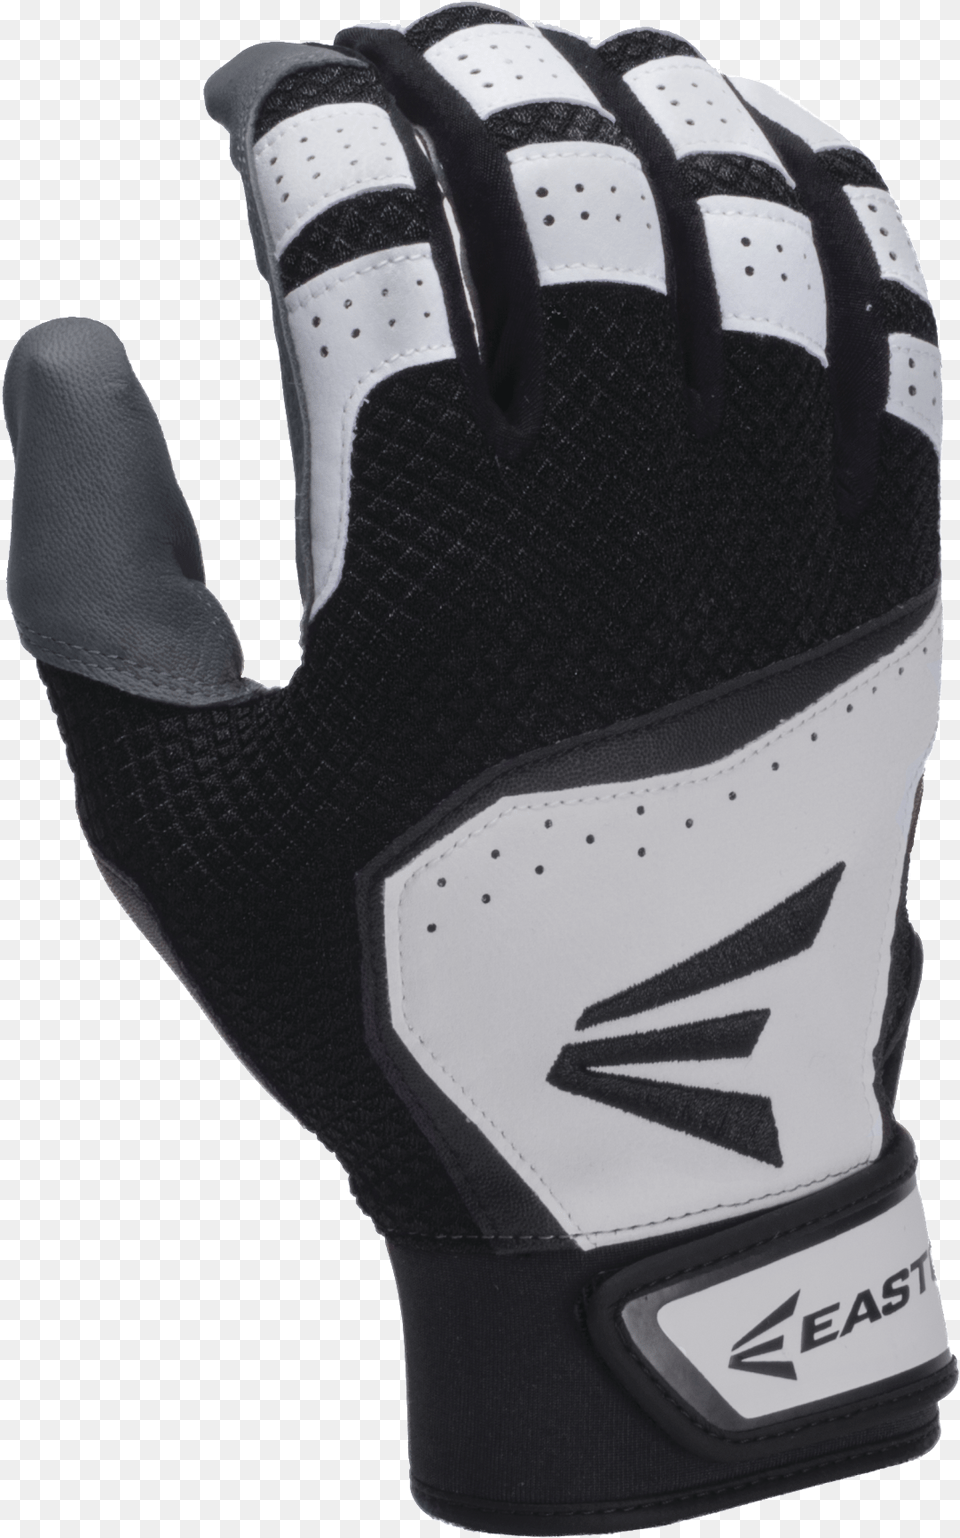 Easton Hs Vrs Batting Gloves, Baseball, Baseball Glove, Clothing, Glove Png Image